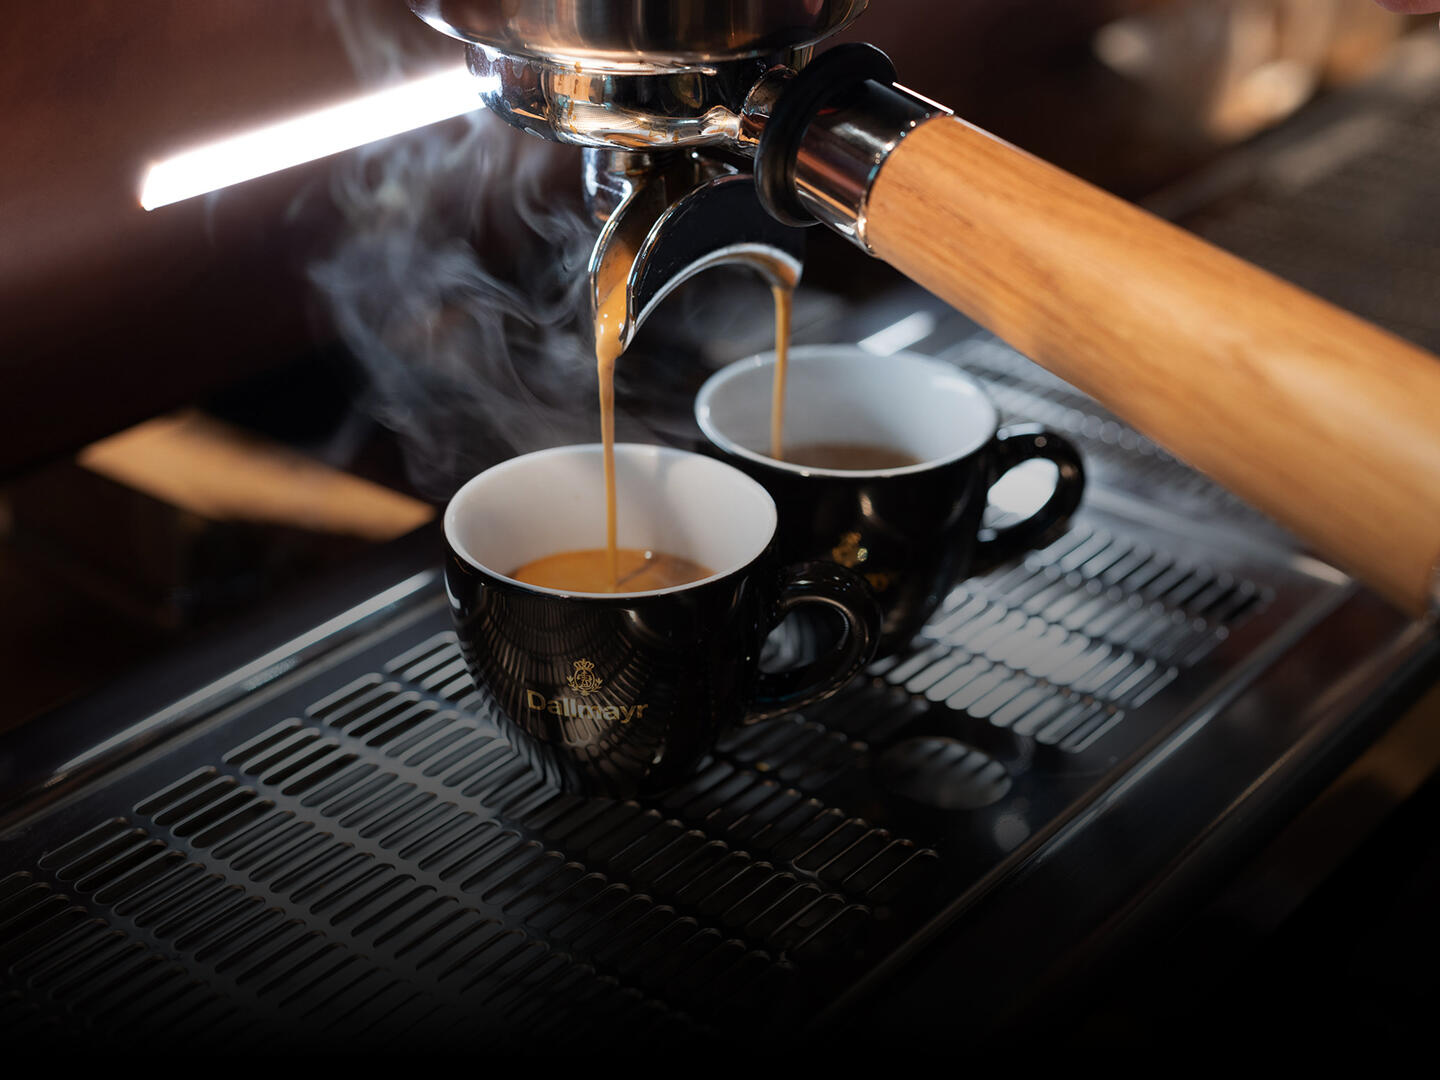 Dallmayr Espresso d'Oro ieplūst no sieta piltuves divās espresso tasītēs.